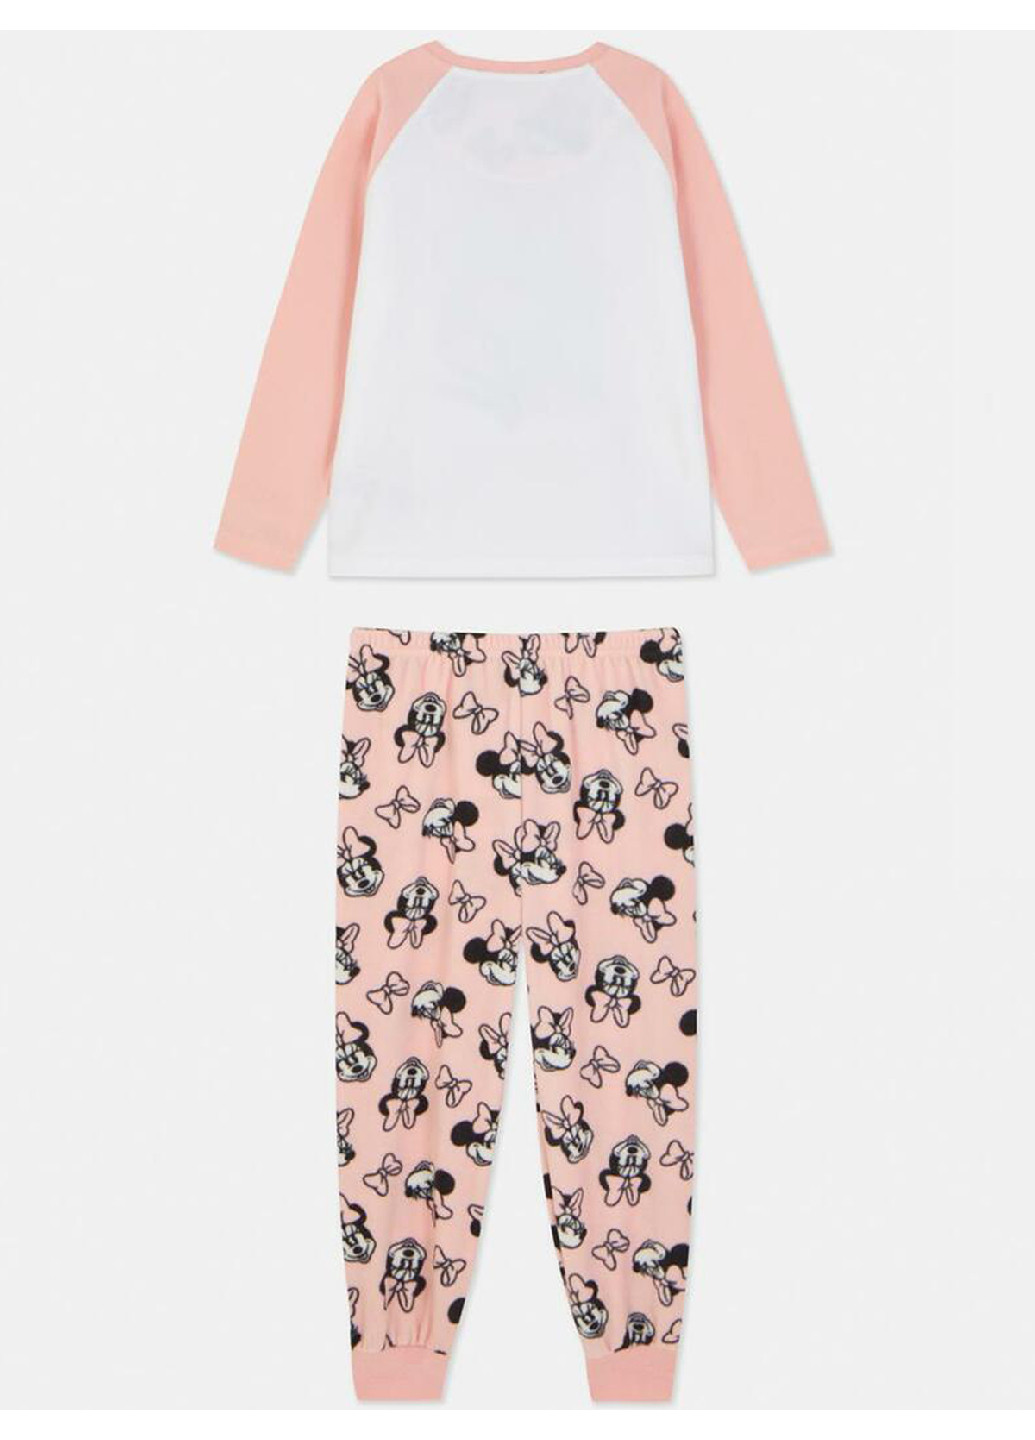 Комбинированная зимняя флисовая пижама (свитшот, брюки) свитшот + брюки Primark